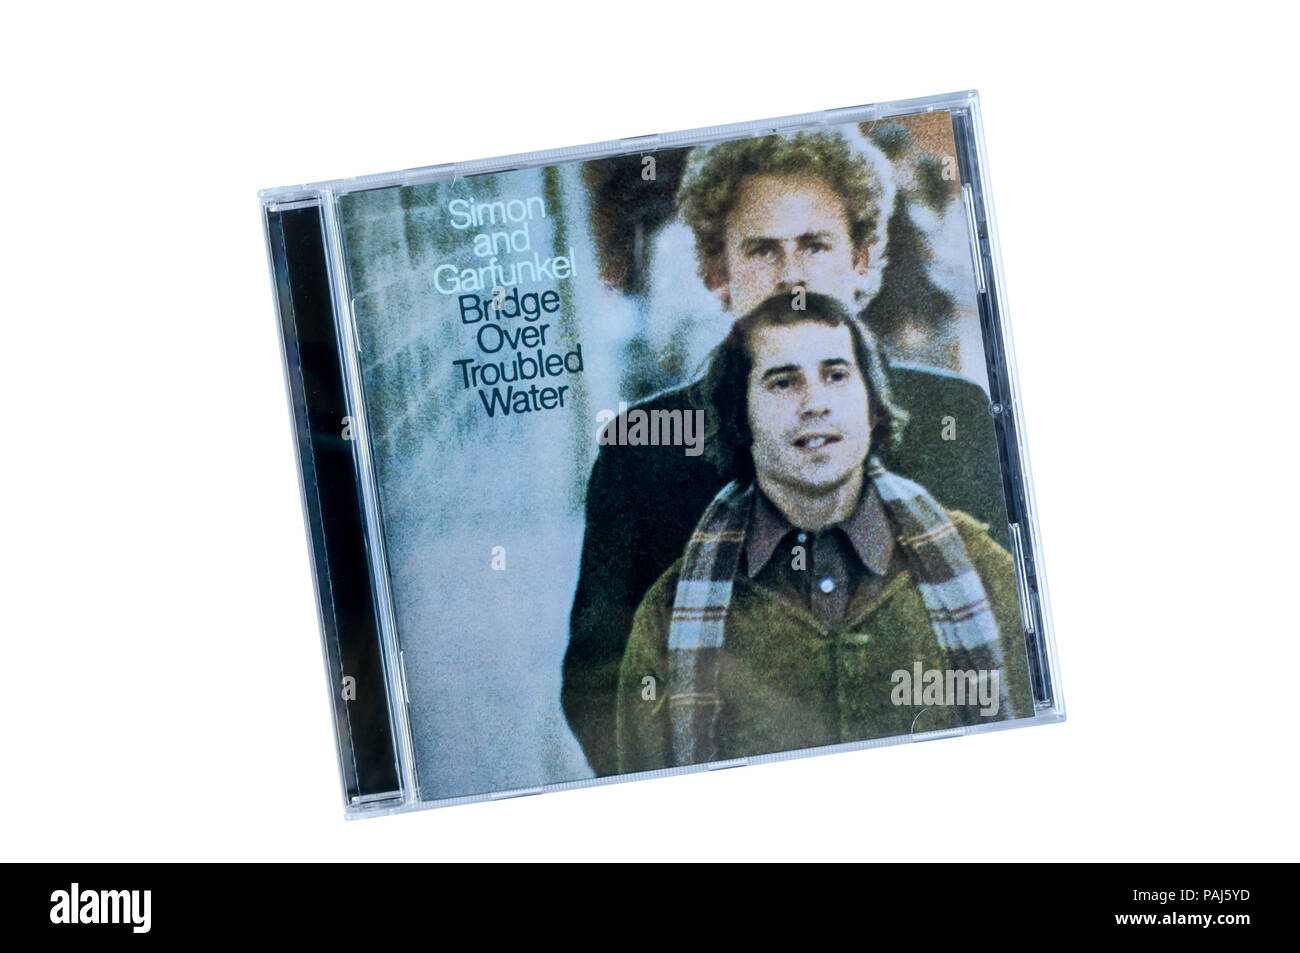 Ponticello sopra l'acqua disturbata era la finale il quinto album in studio di American folk rock duo Simon & Garfunkel. È stato rilasciato nel 1970. Foto Stock